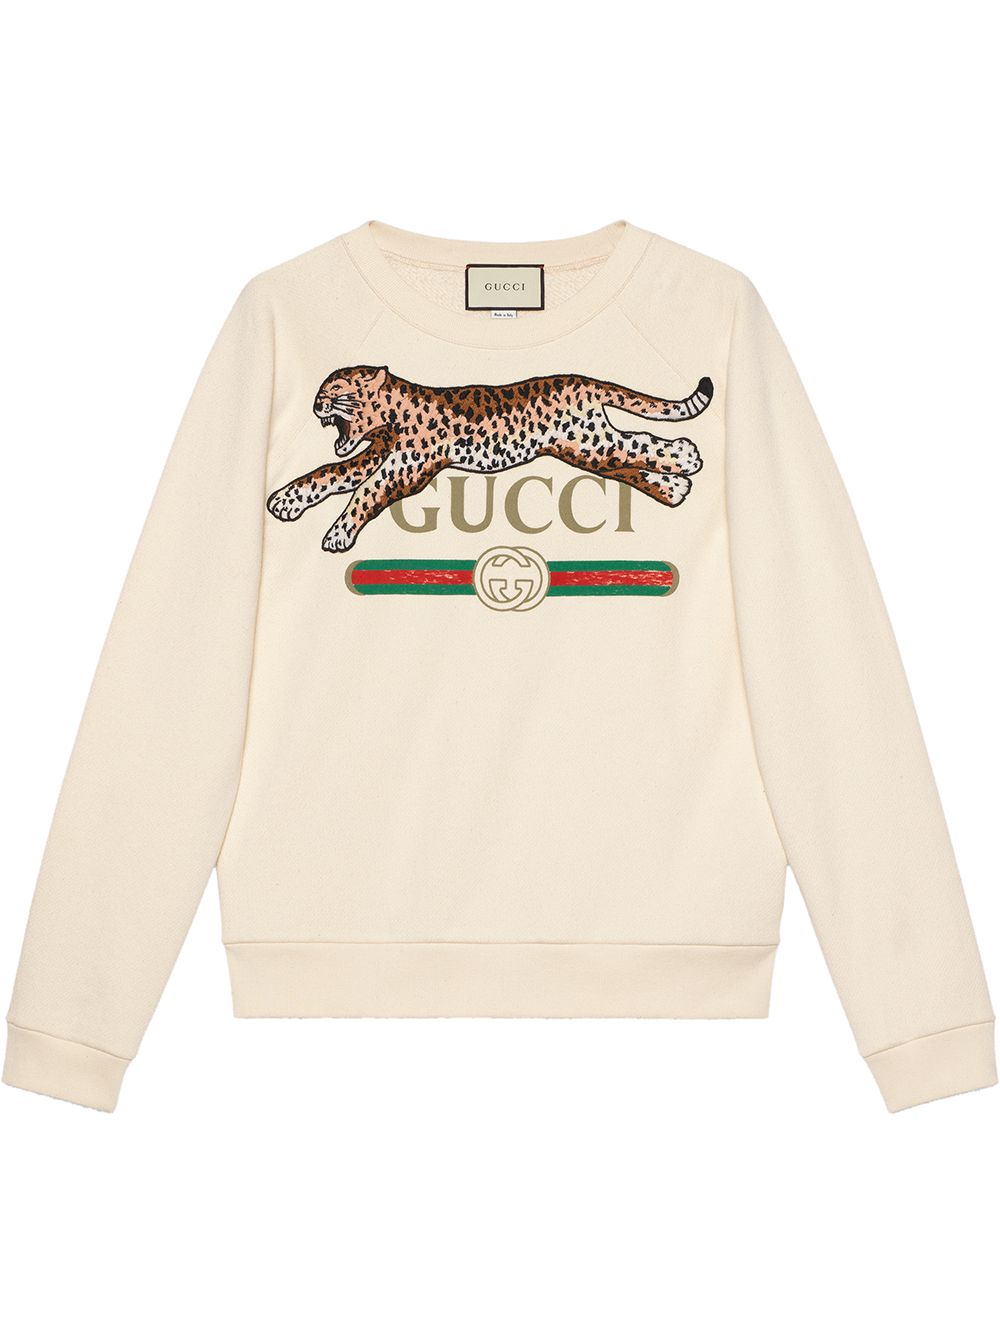 фото Gucci толстовка с логотипом и нашивкой леопарда